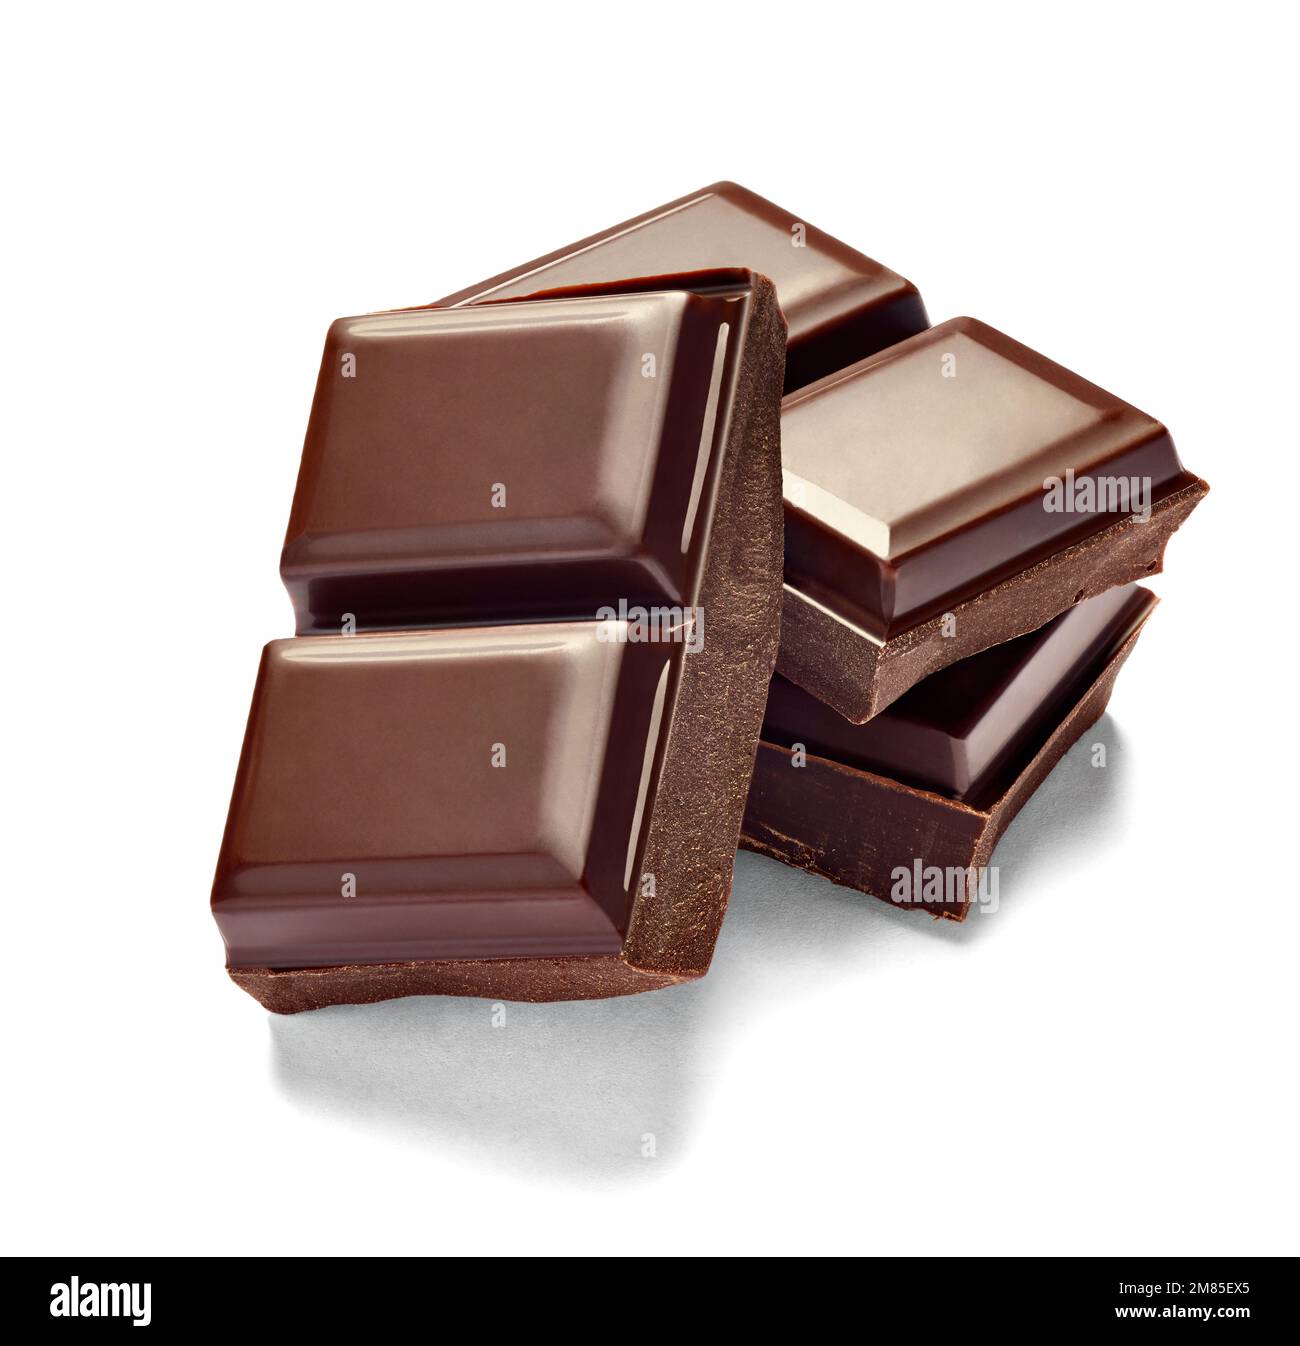 Schokolade süße Lebensmittel Dessert Stapel braunen Kakao dunkle Stück köstliche Zutat kalorienreiche Ernährung Stockfoto